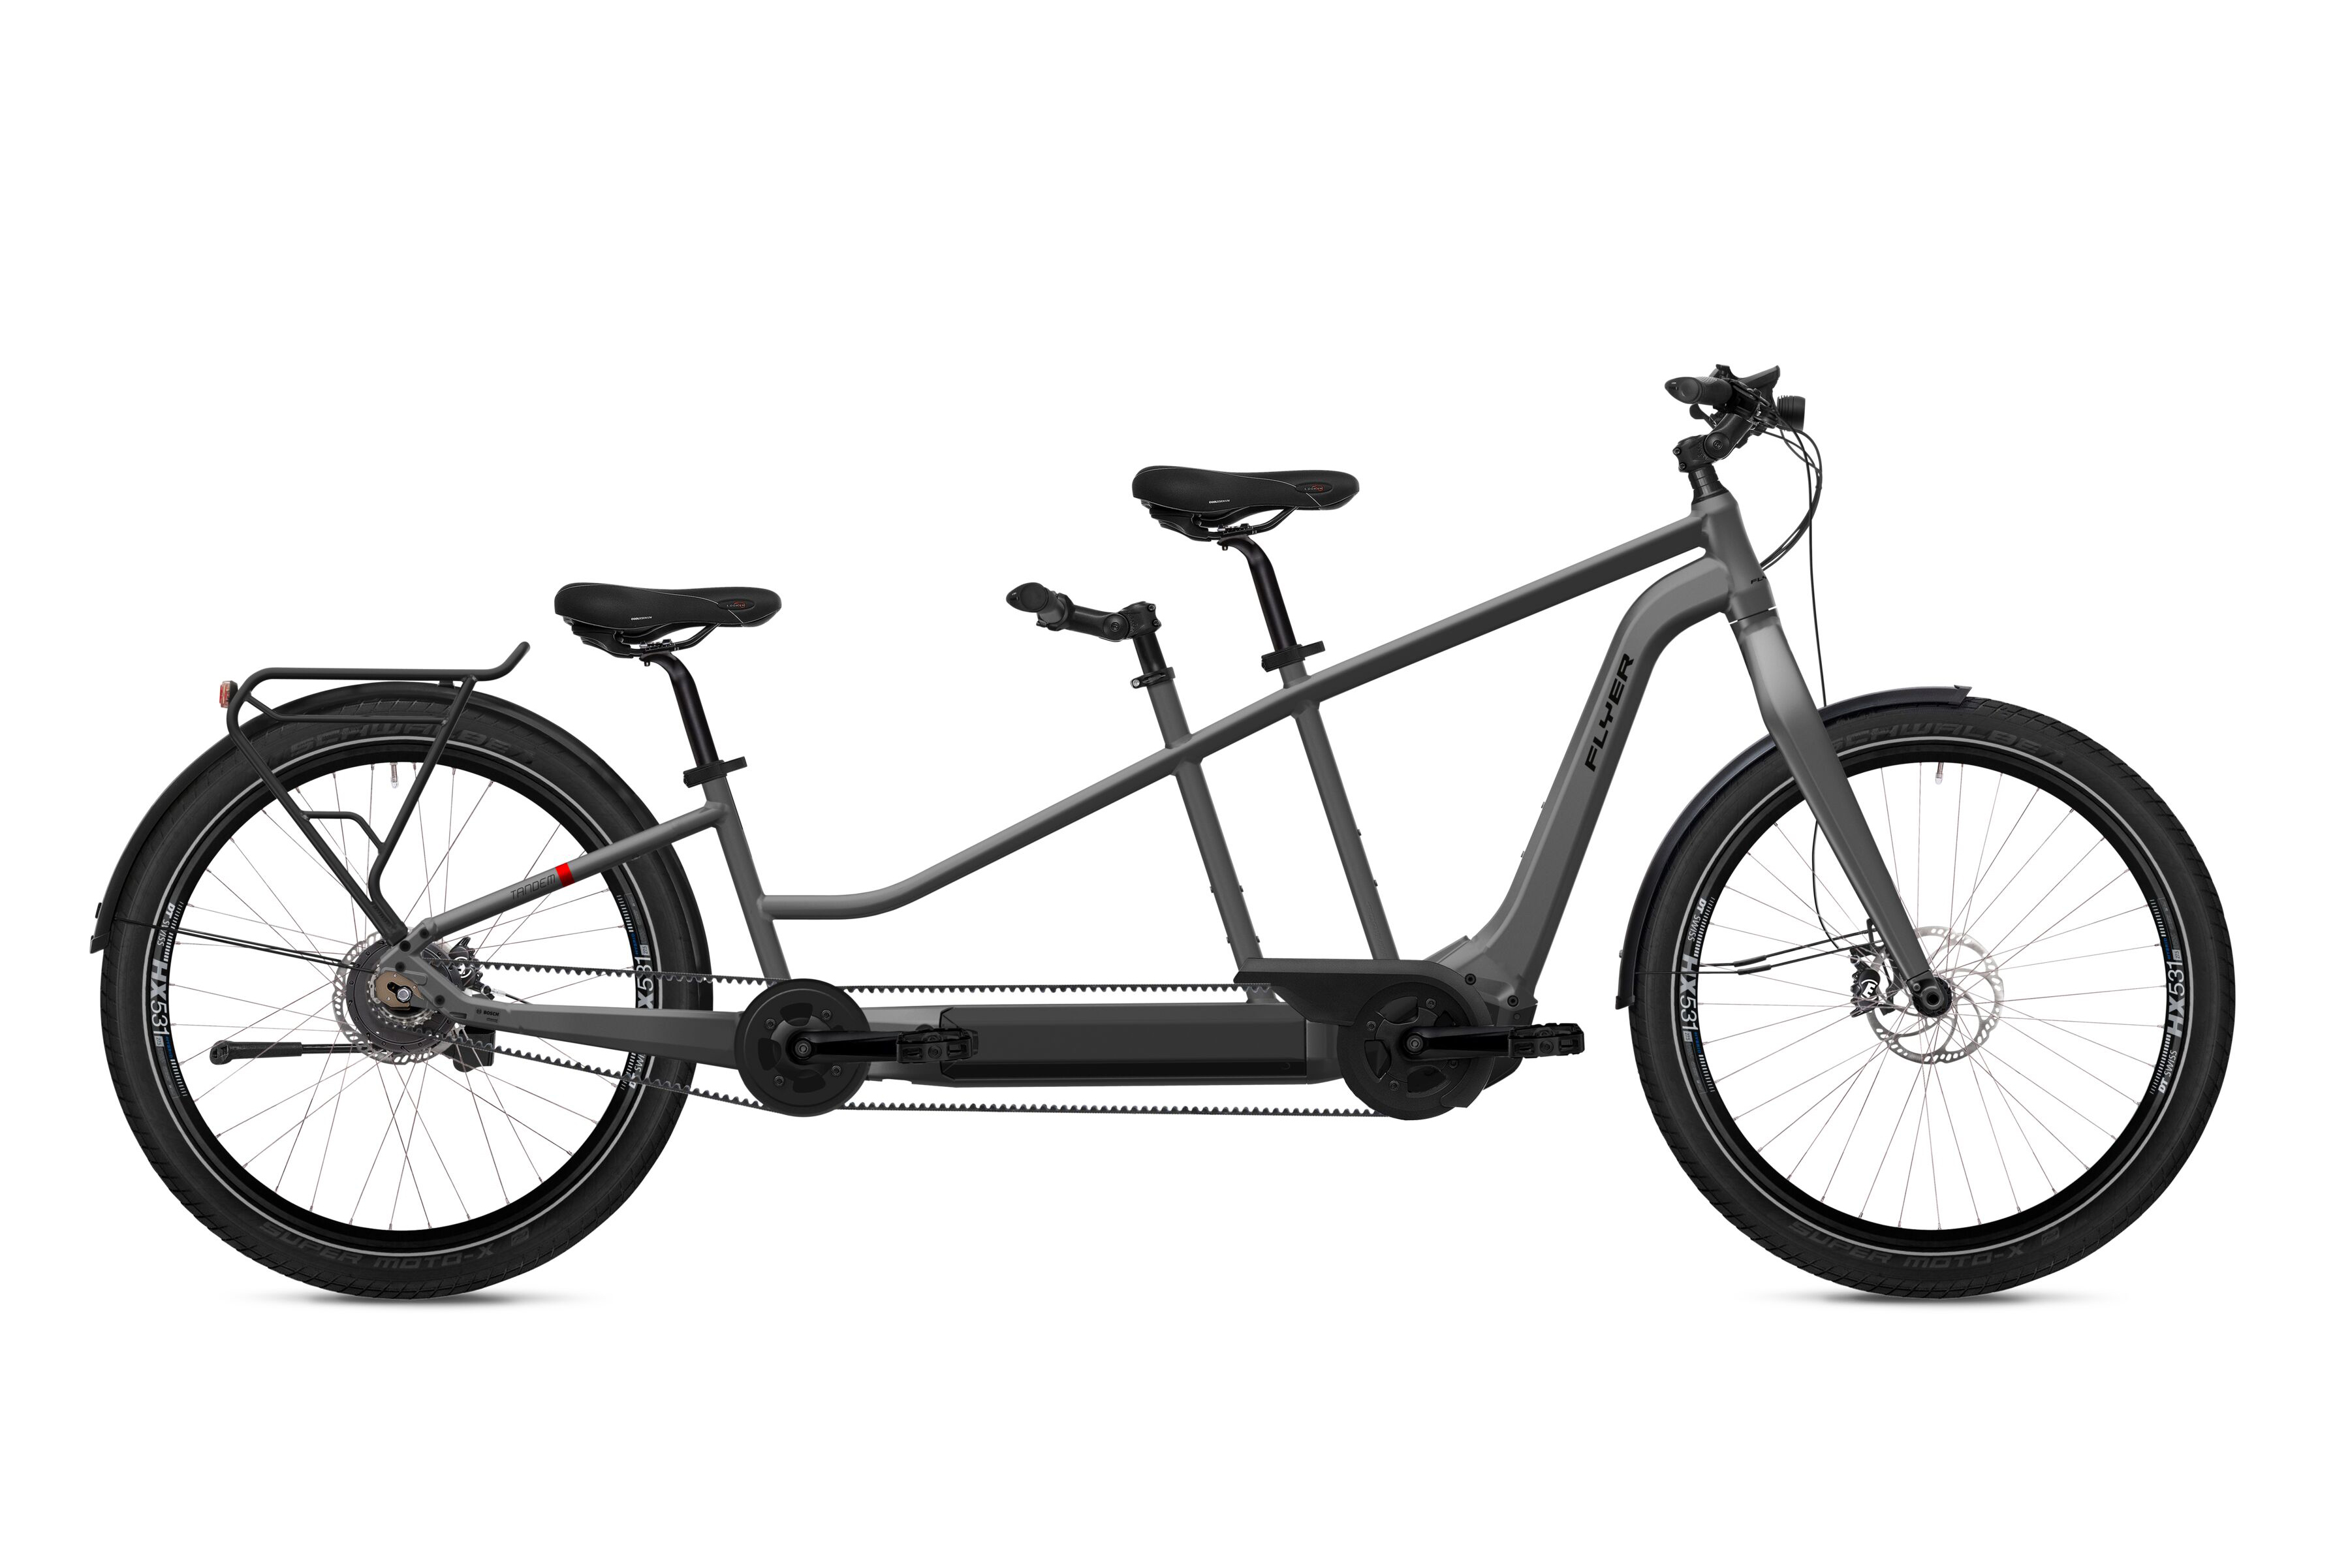 Flyer 7.83 grijs / unisex / 2022 elektrische fiets kopen? | Kieskeurig.nl helpt kiezen